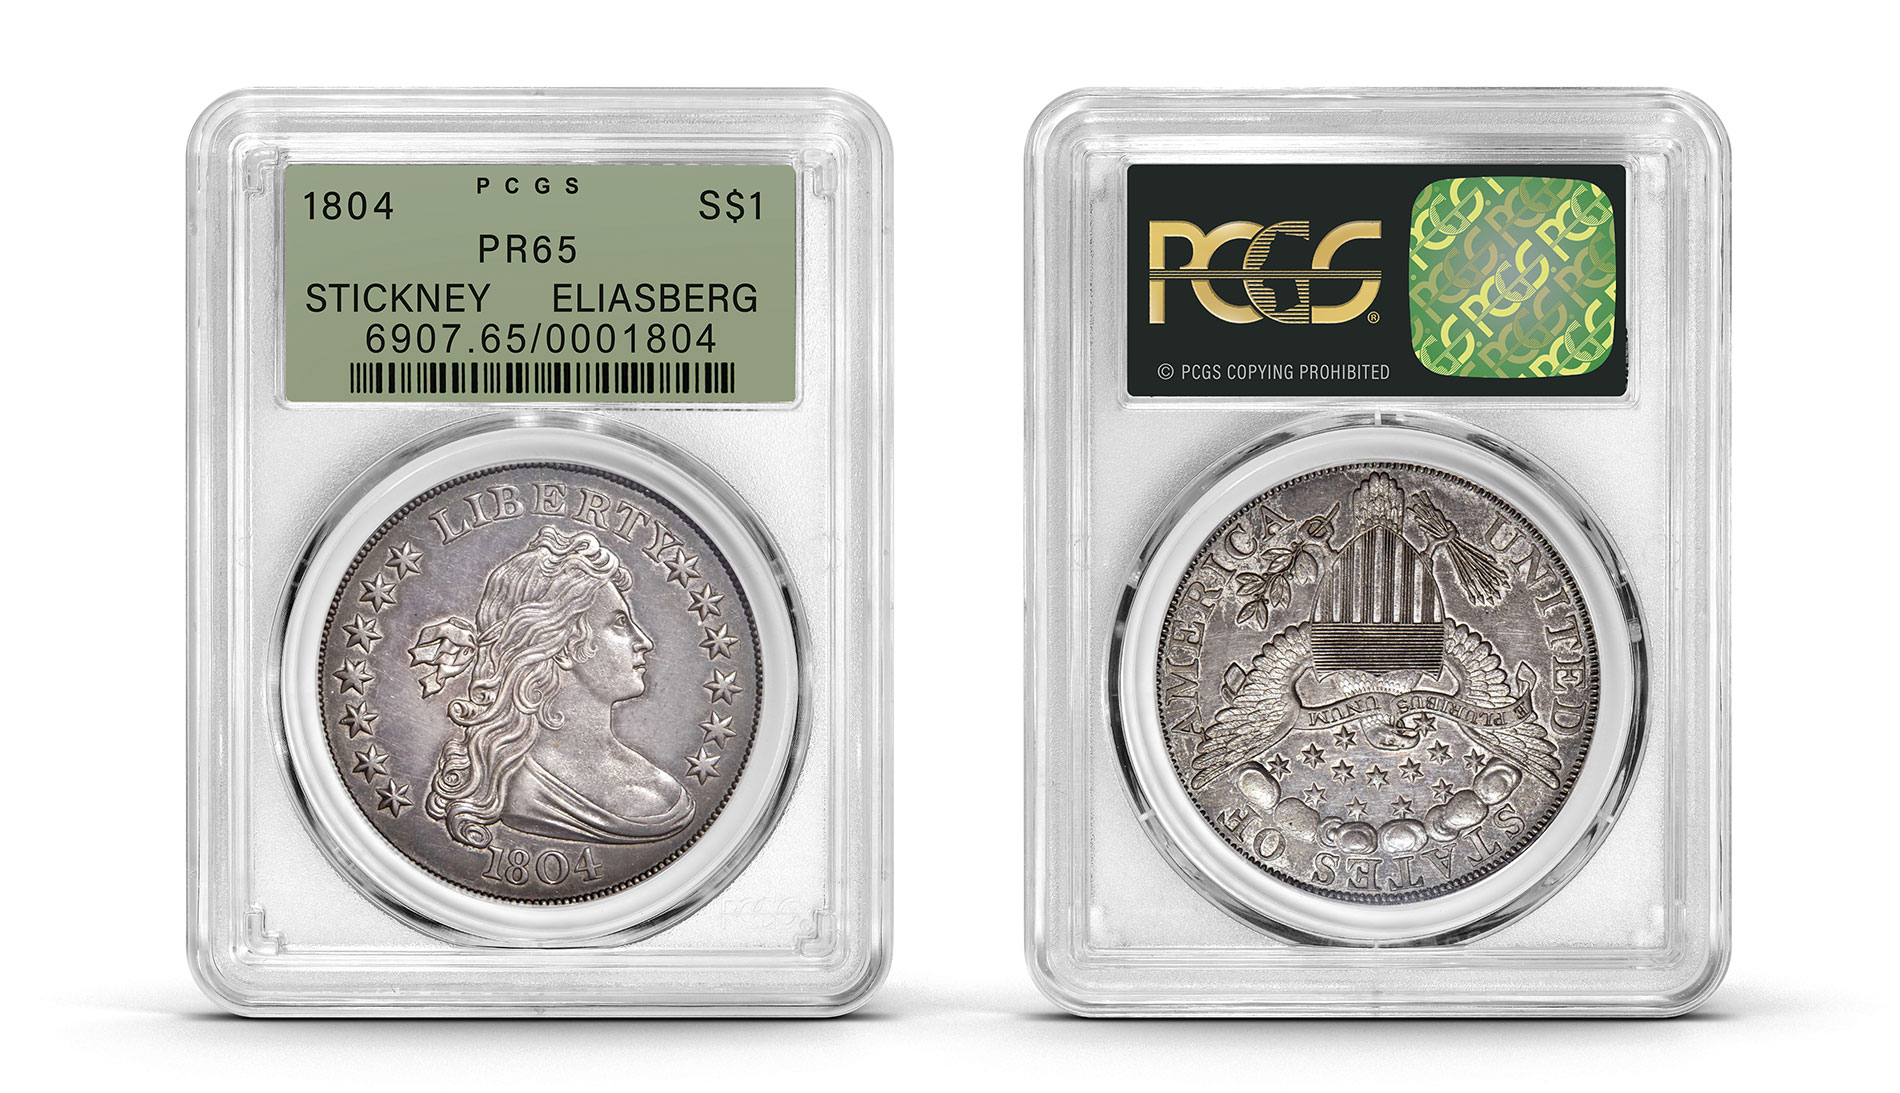 grading rare coins, rare coin grading